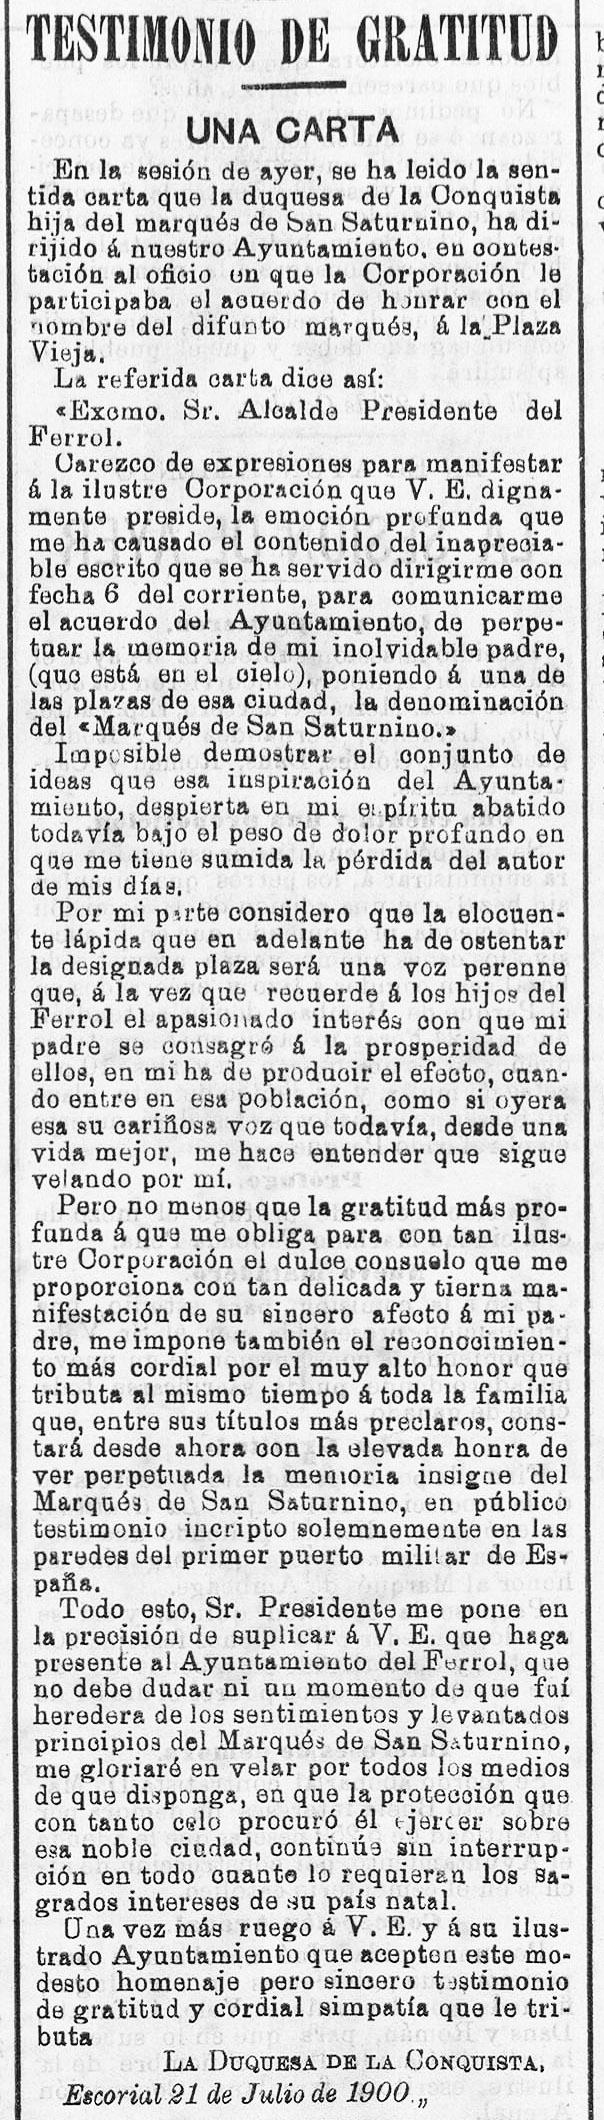 carta-de-agradecemento-da-marquesa-el-correo-gallego-28-de-xullo-de-1900